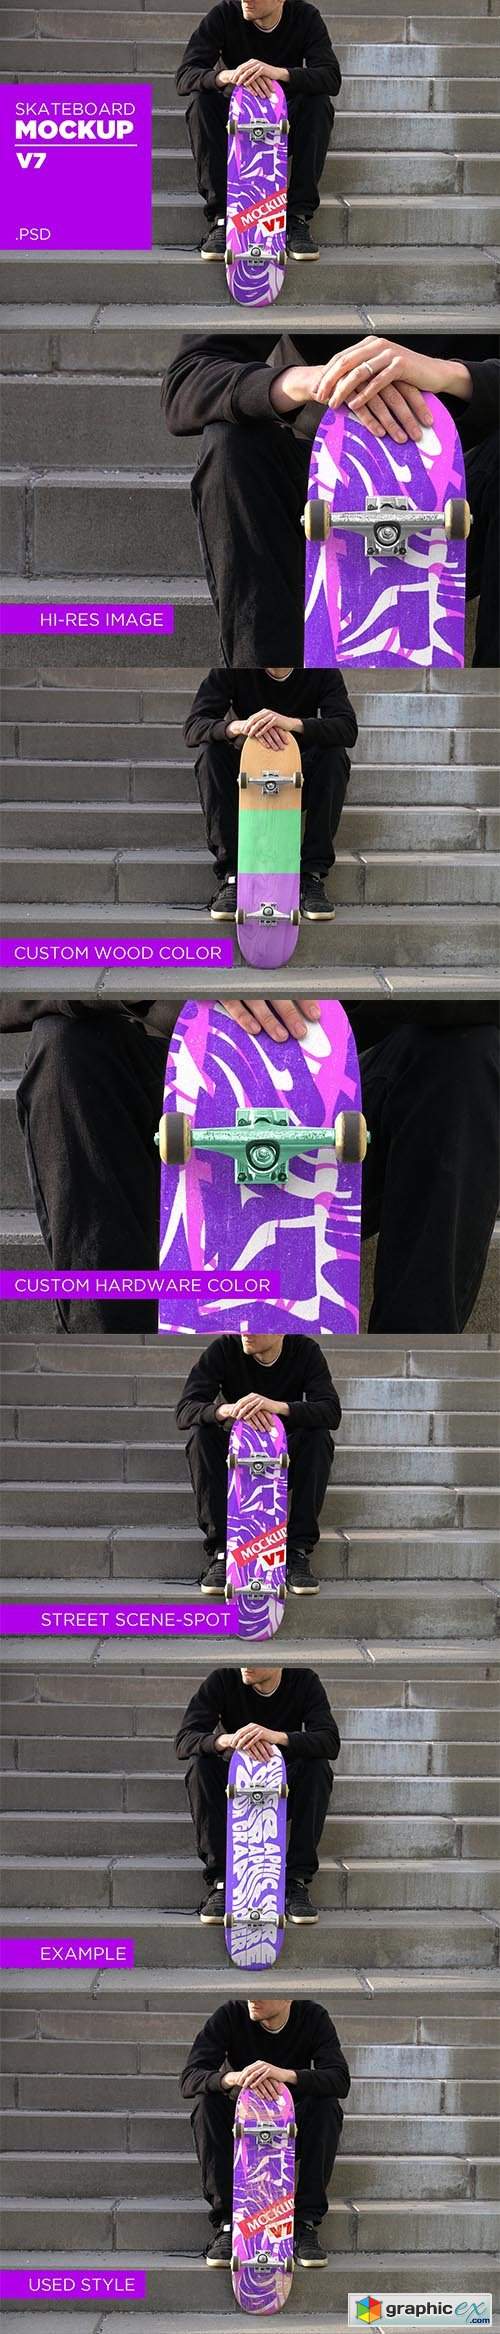 Skateboard Mockup V7 - PSD 